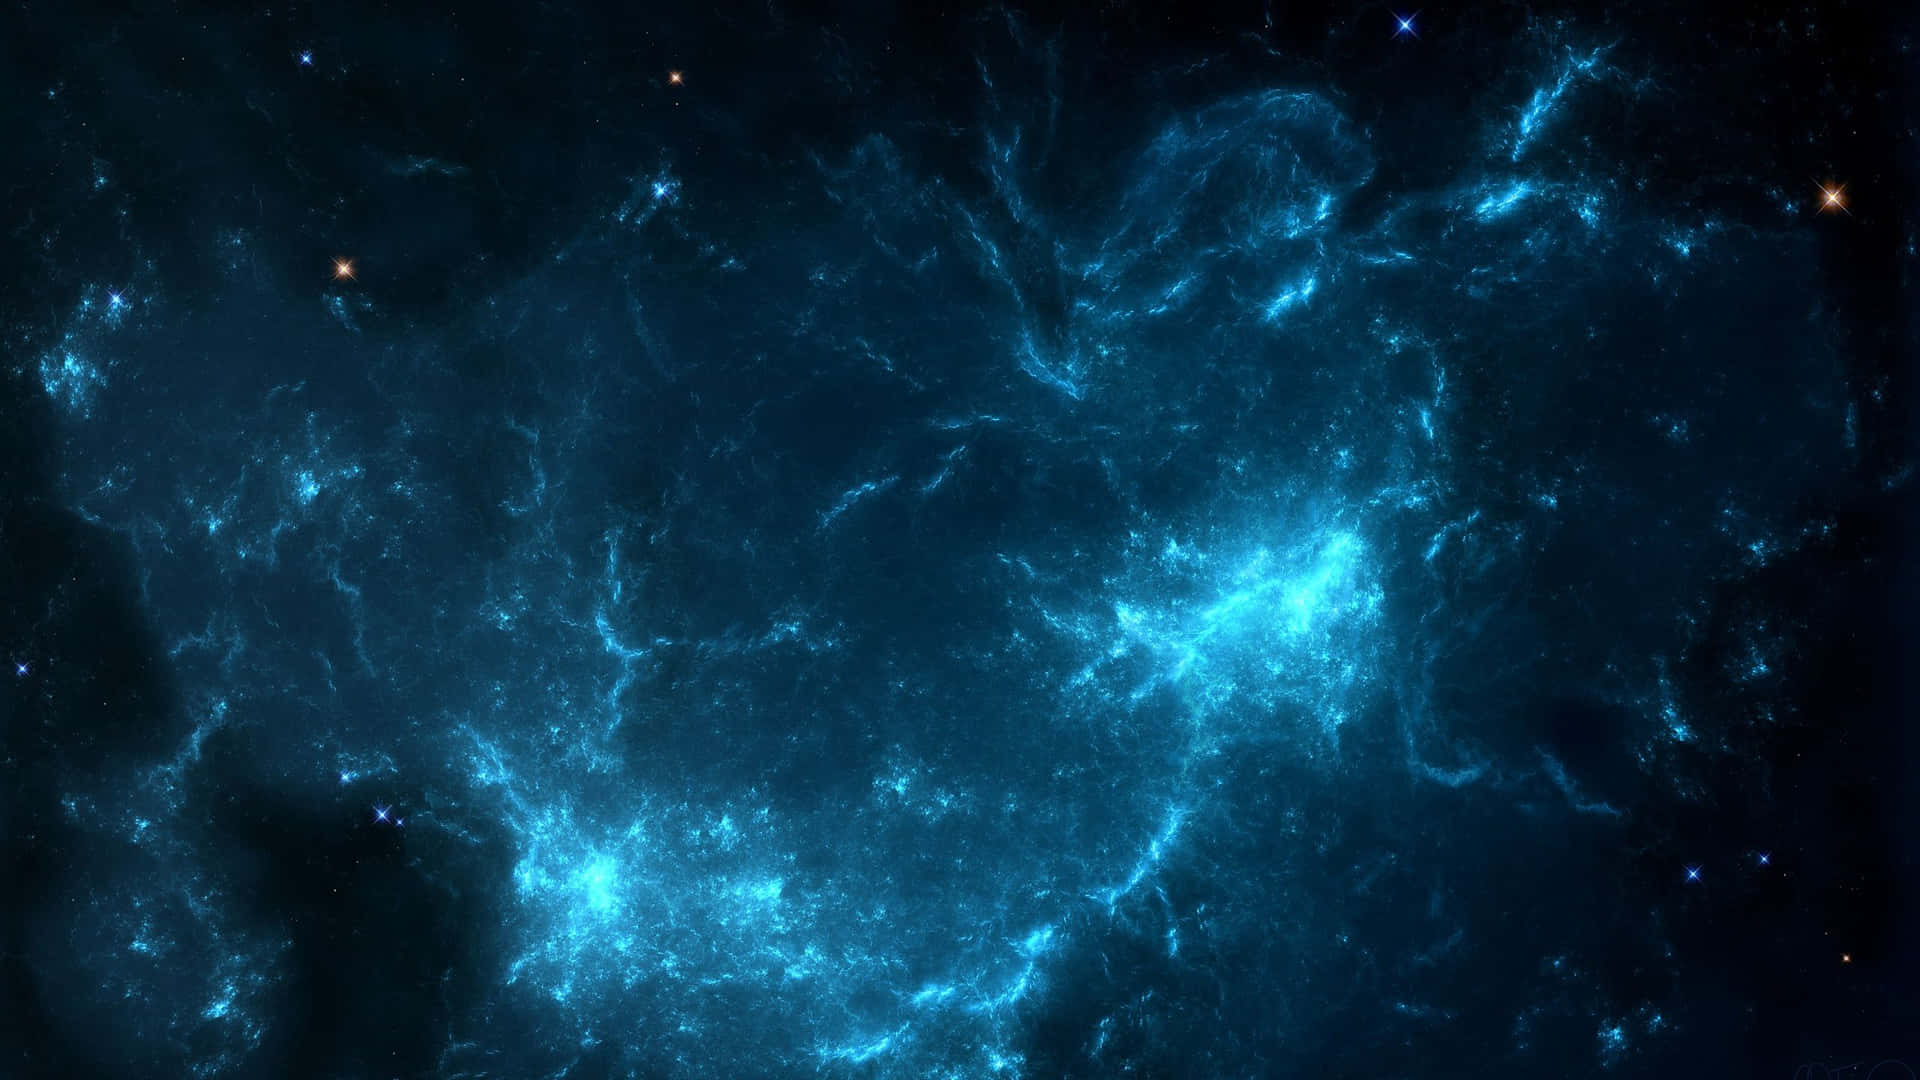 A vivid dark blue star burning against a cosmic night sky. Wallpaper